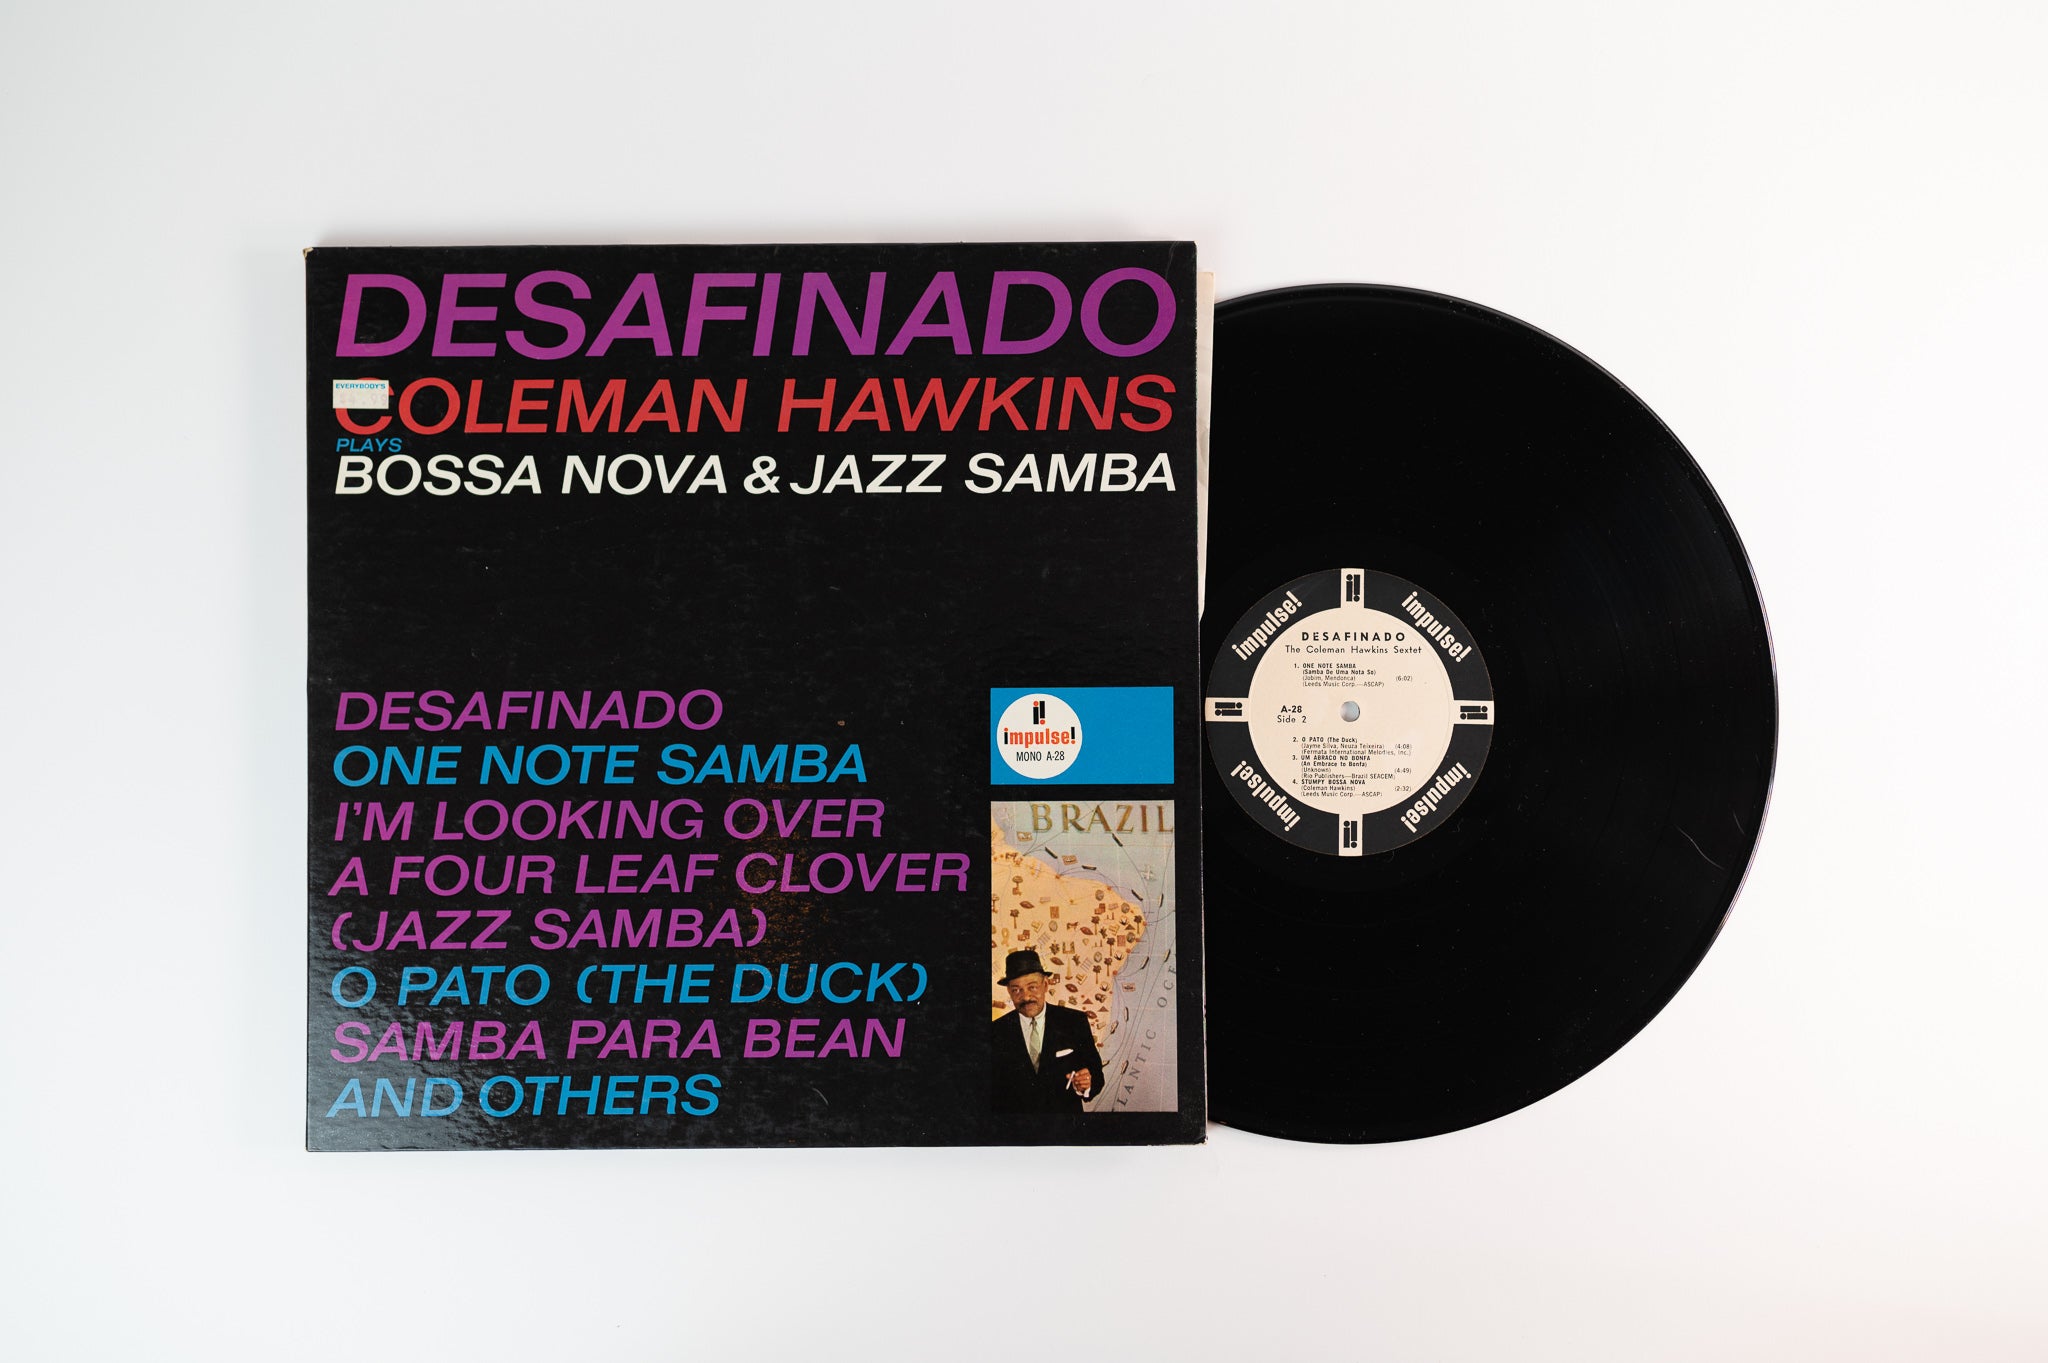 Coleman Hawkins - Desafinado (Bossa Nova & Jazz Samba) on Impulse Mono Promo